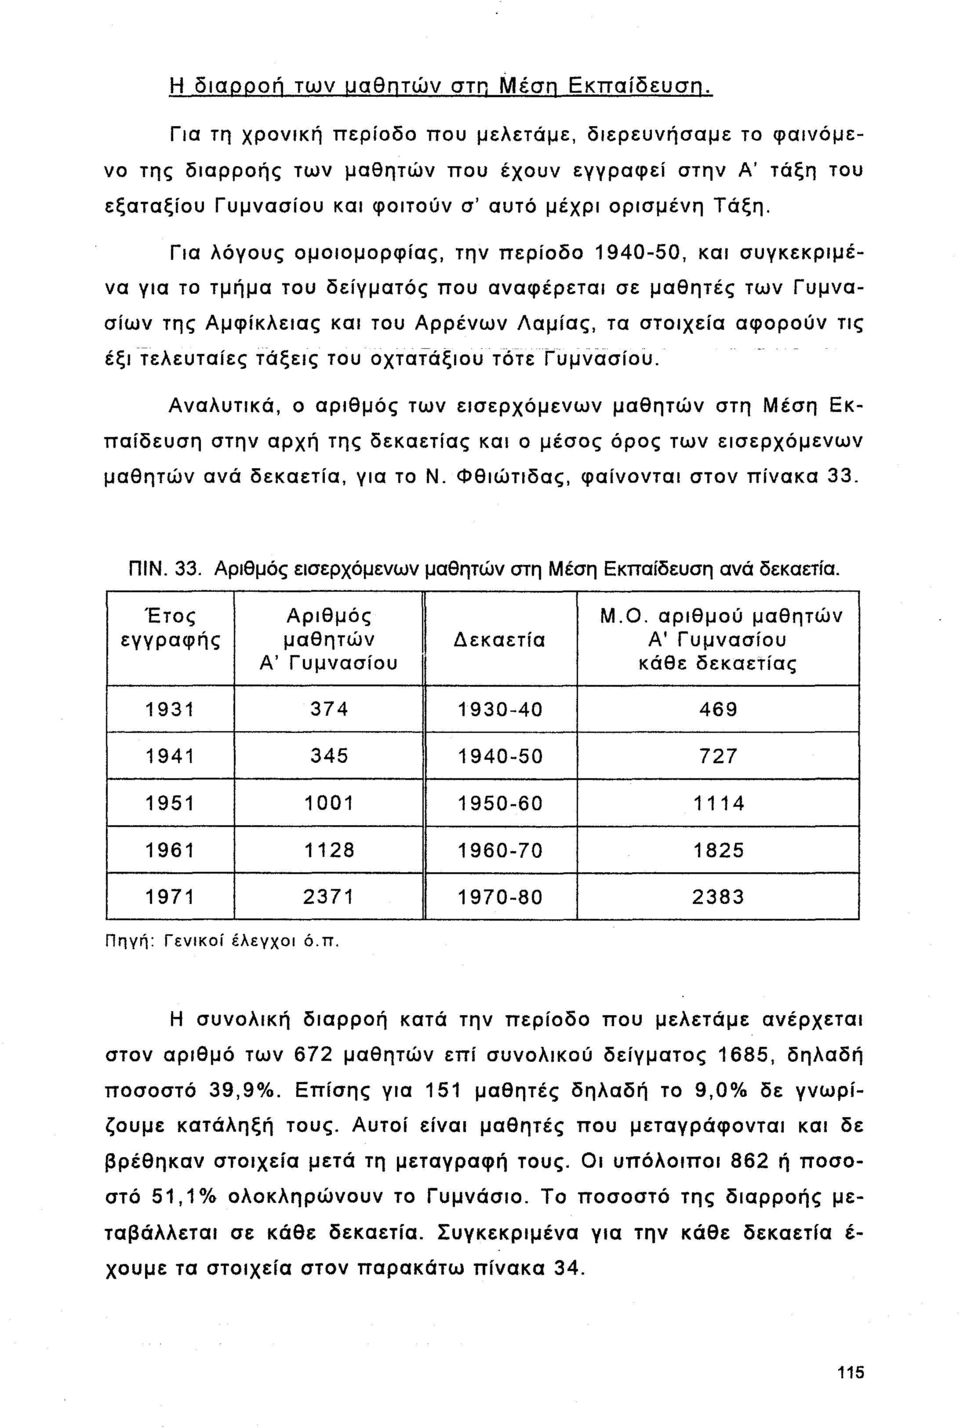 Για λόγους ομοιομορφίας, την περίοδο 1940-50, και συγκεκριμένα για το τμήμα του δείγματος που αναφέρεται σε μαθητές των Γυμνασίων της Αμφίκλειας και του Αρρένων Λαμίας, τα στοιχεία αφορούν τις έξι